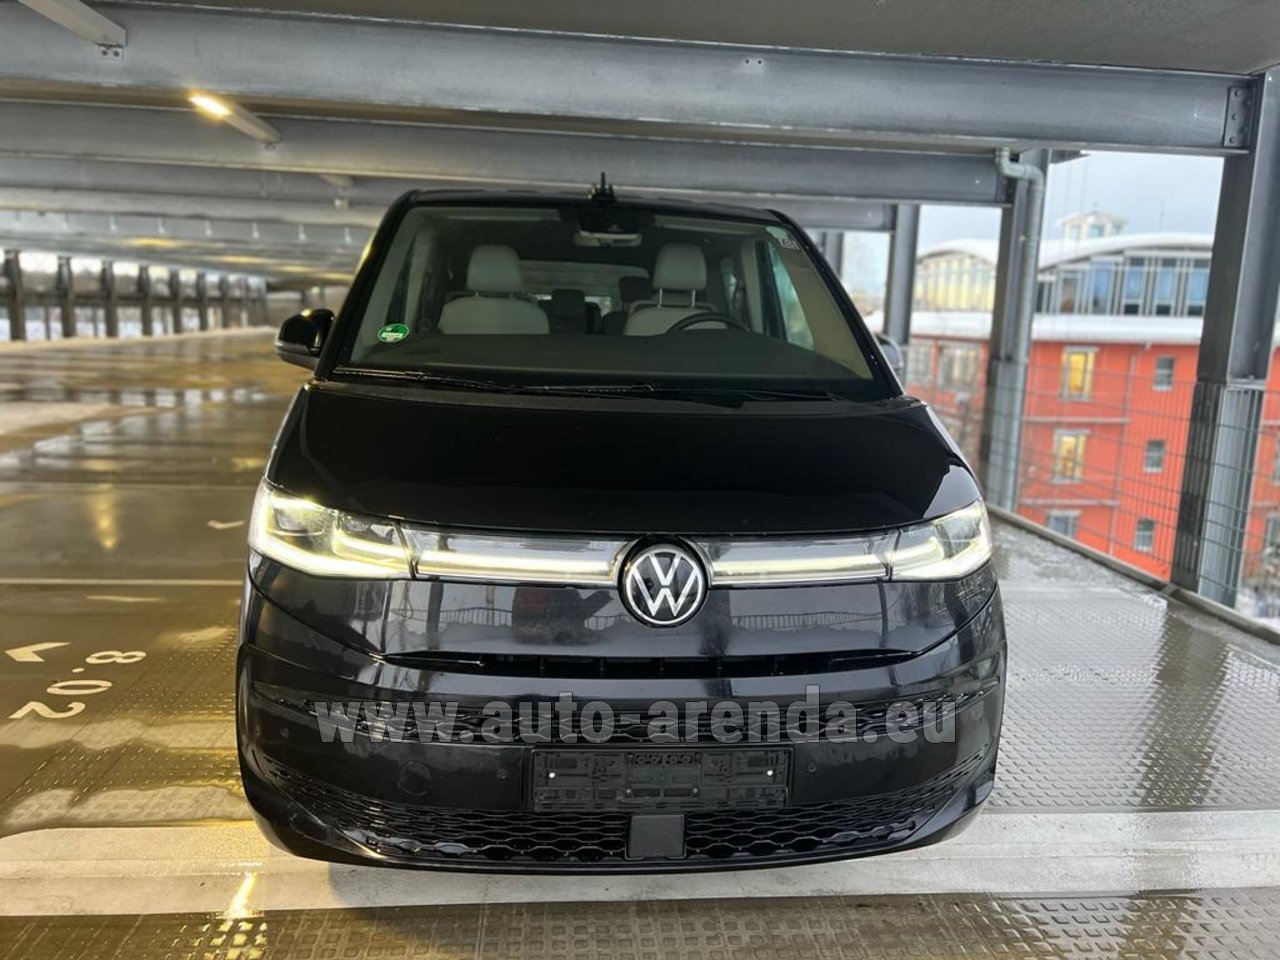 Rent a VW Multivan 7-seats in France (Côte d'Azur) with Elite Rent.